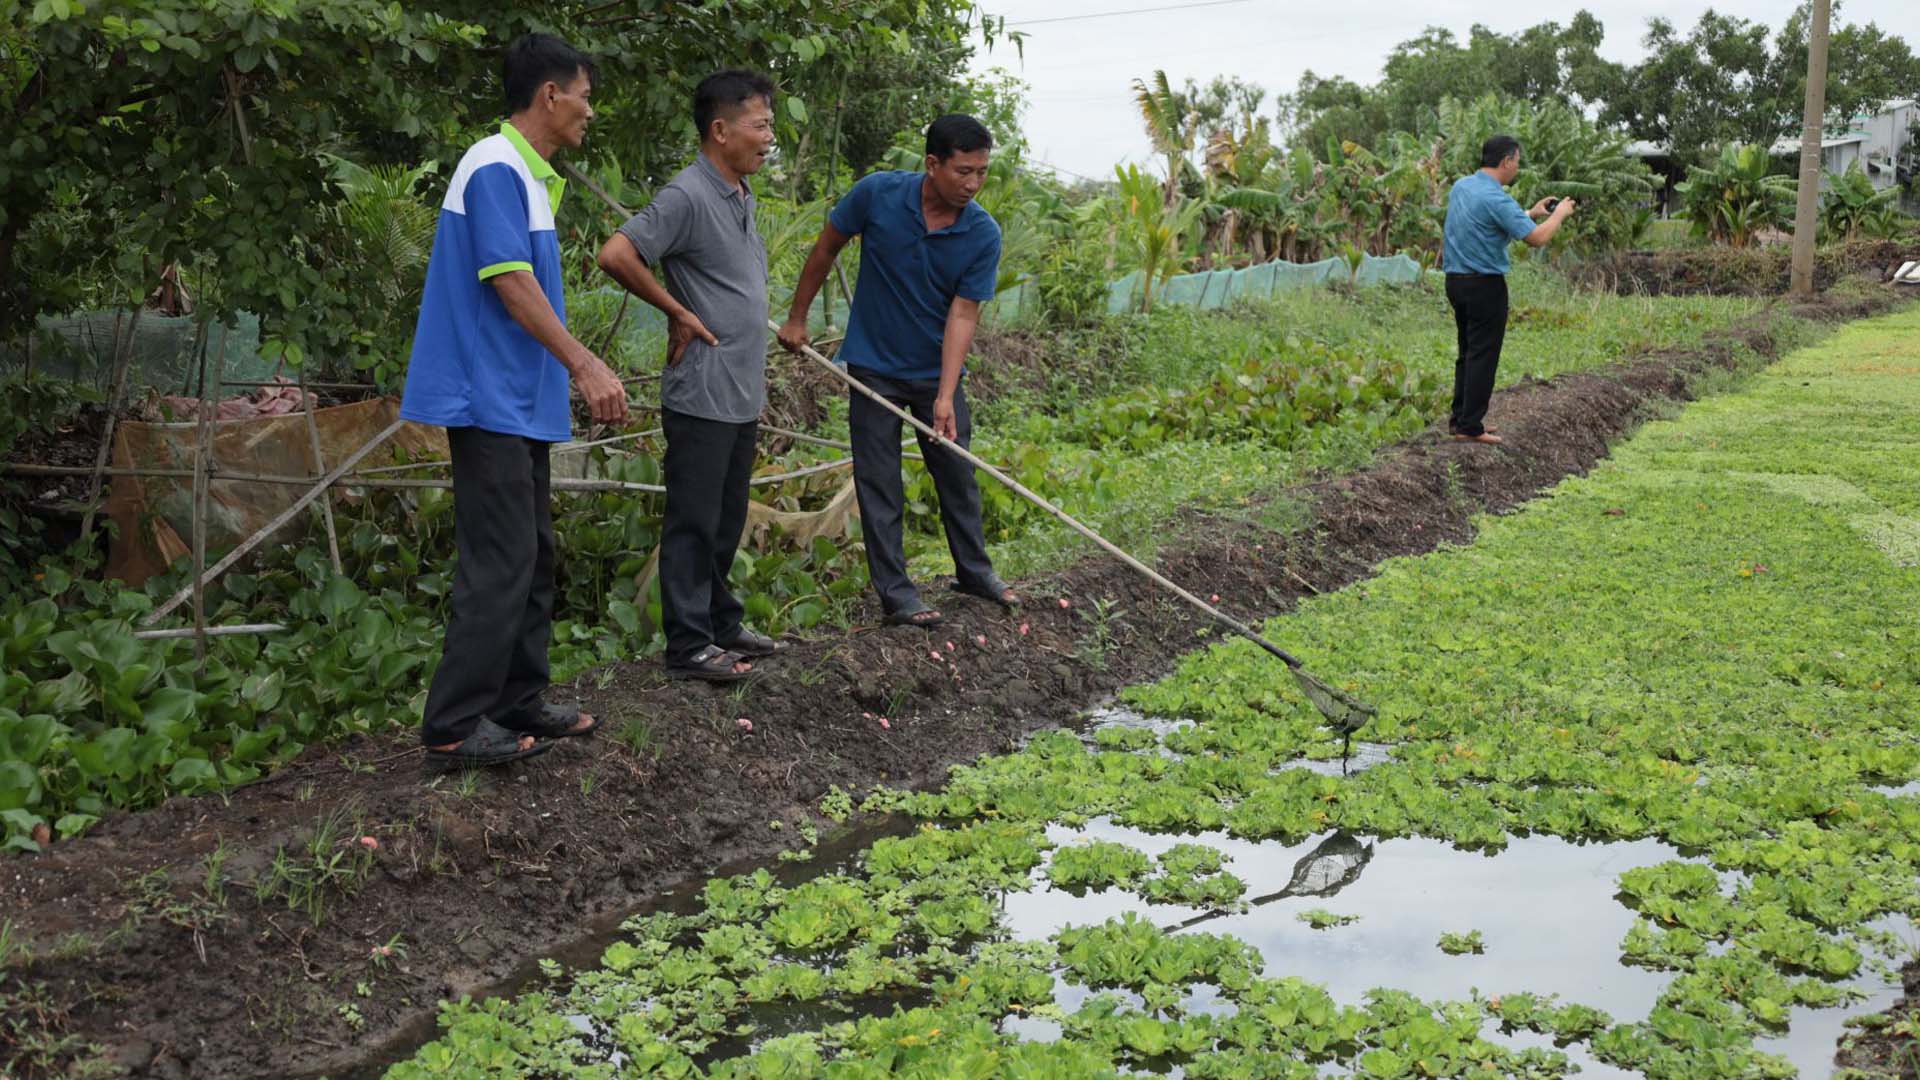 Tây Ninh: Triển vọng mô hình nuôi ốc bươu đen mang lại hiệu quả kinh tế cao